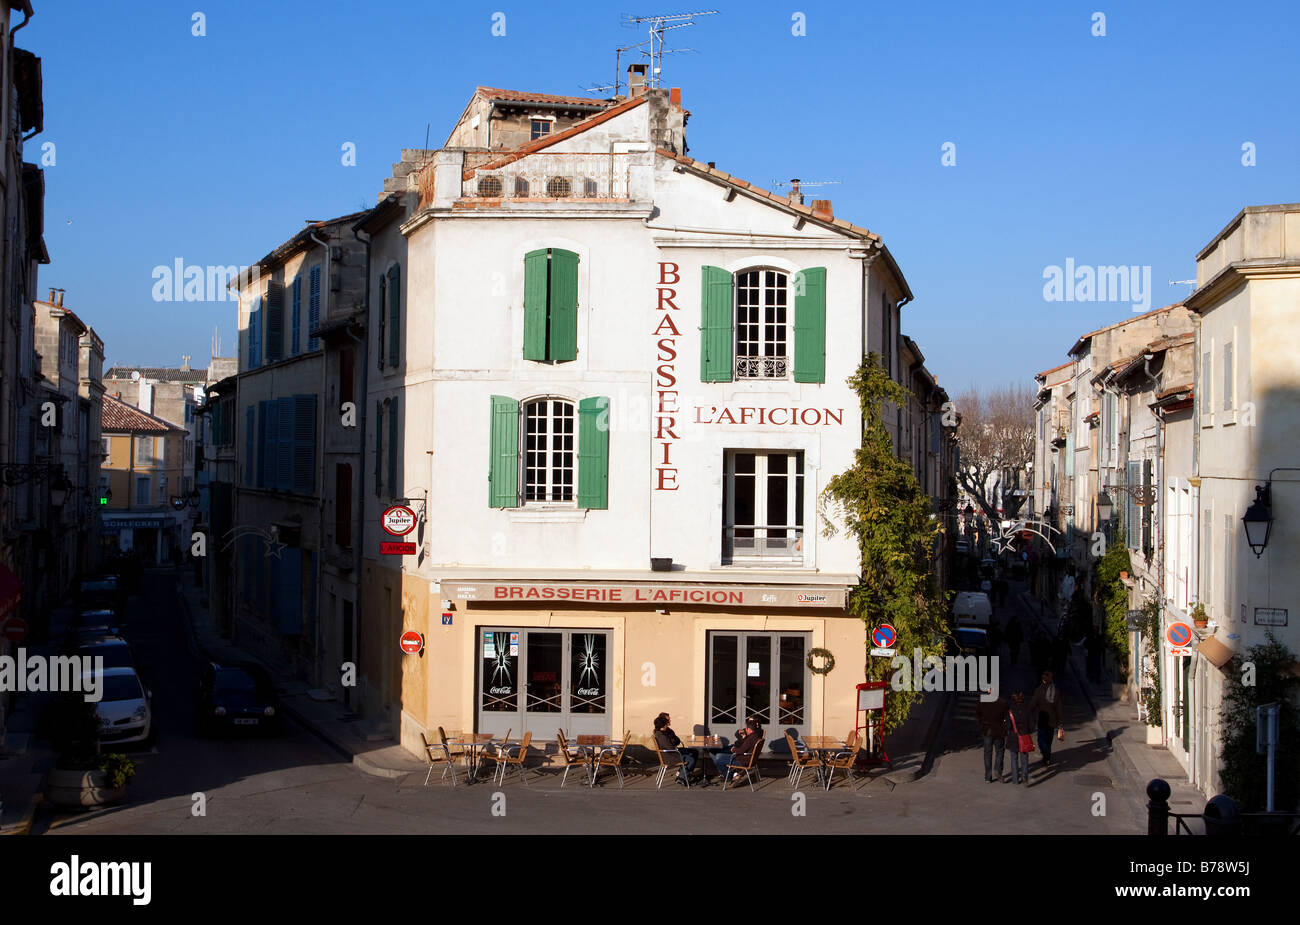 L'aficion Brasserie vu depuis les marches de l'arène à Arles Bouches du Rhône Provence France Banque D'Images